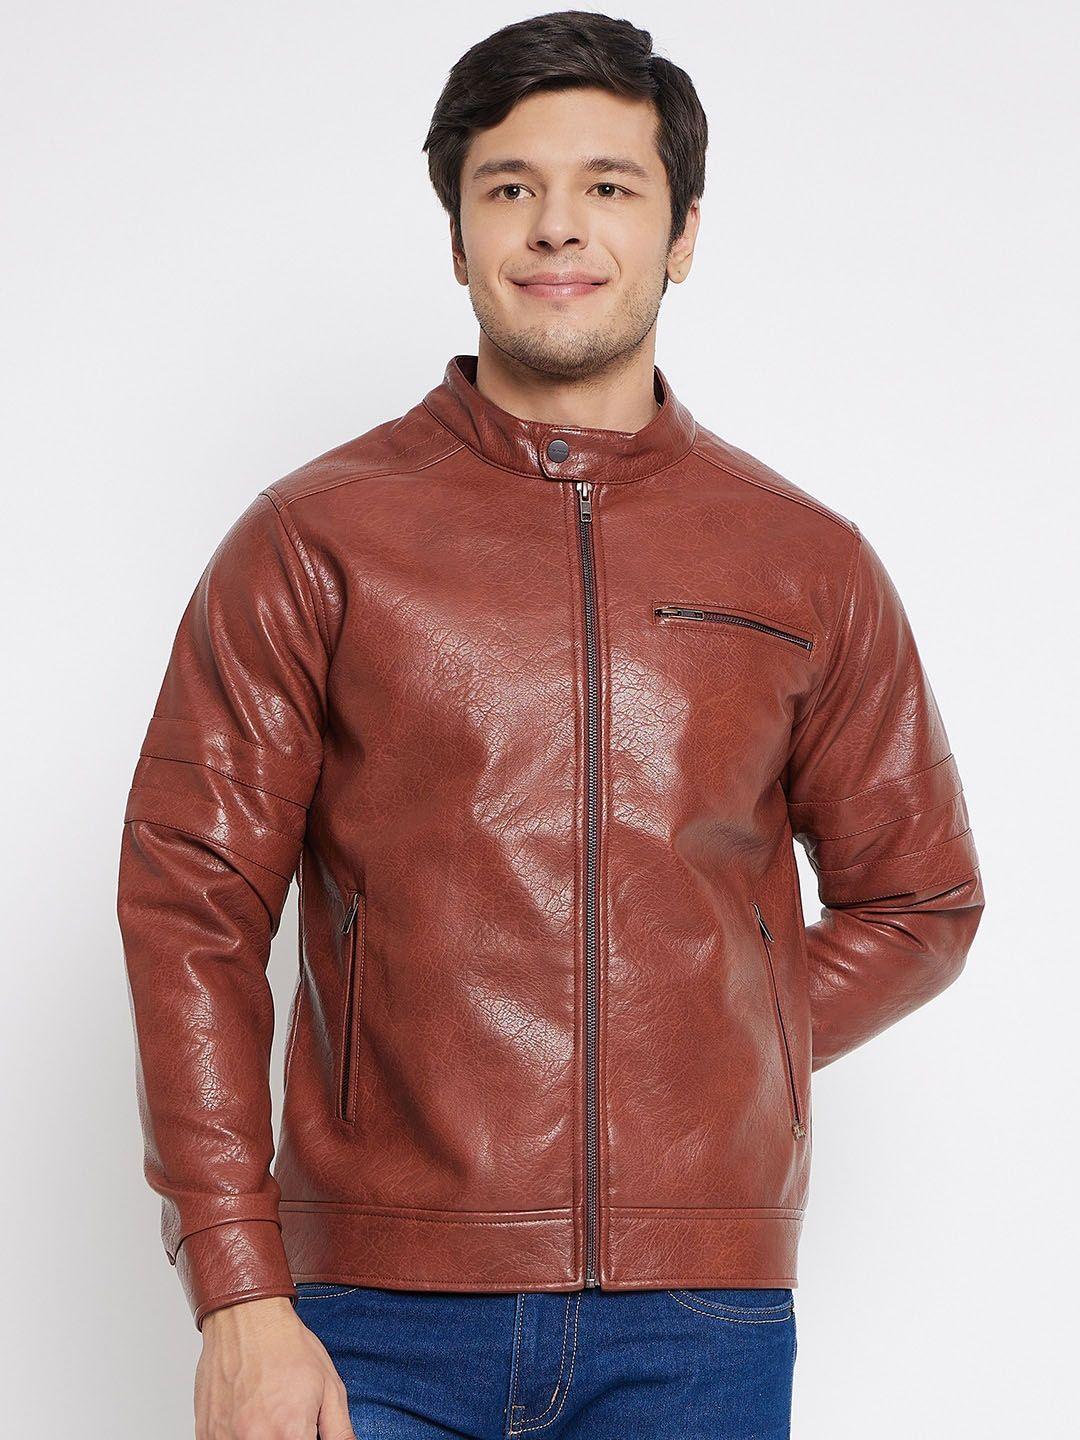 okane-mock-collar-leather-jacket